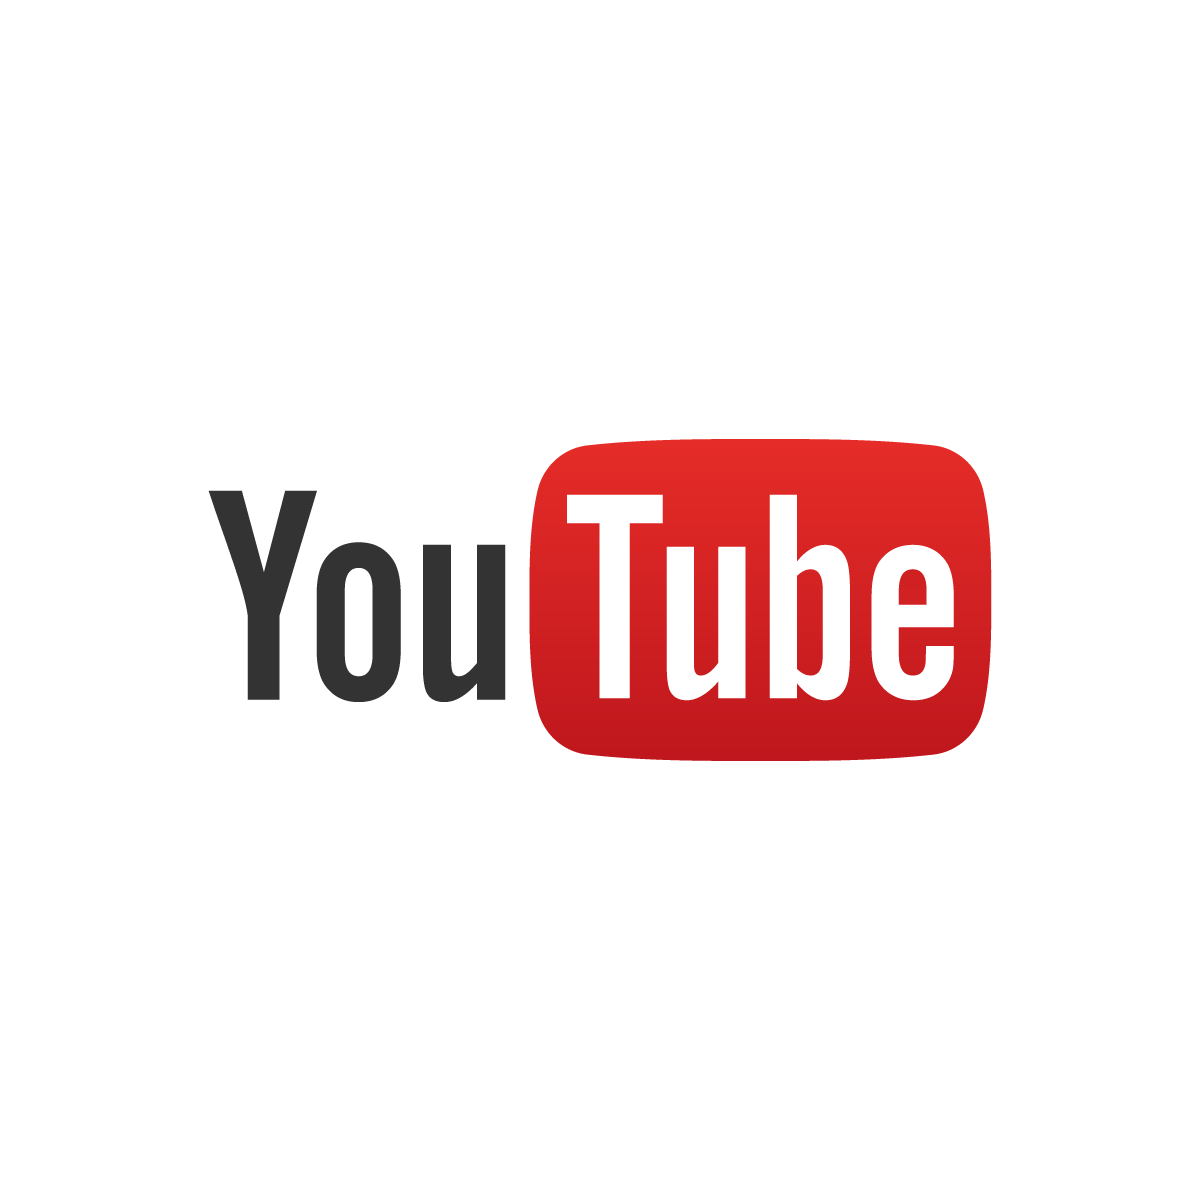 YouTube за три месяца удалил 58 миллионов видеороликов